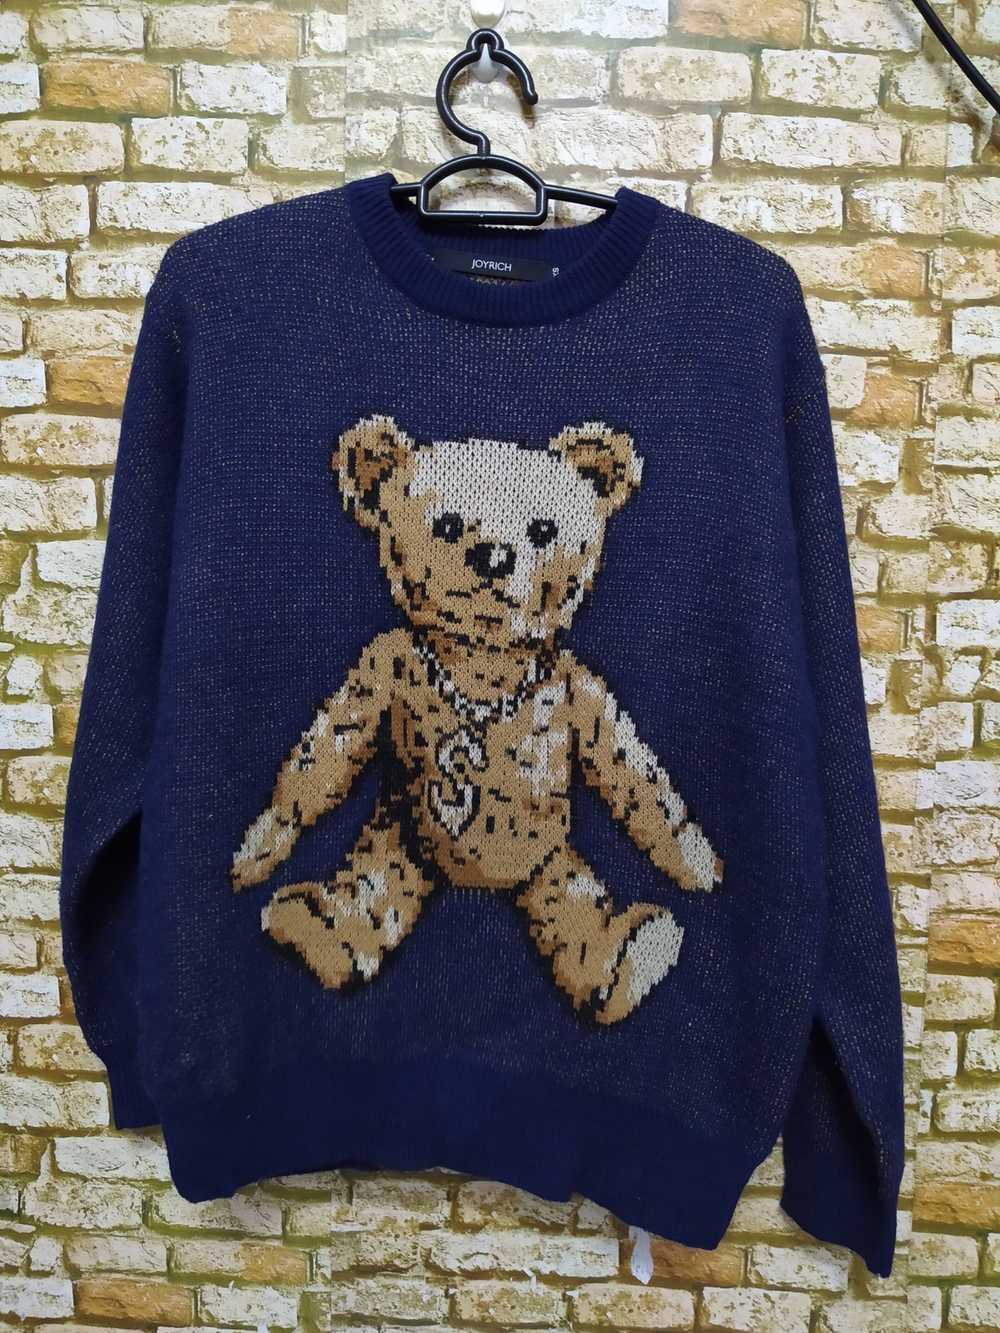 Joyrich, Sweaters, Joyrich Teddy Bear Wool Sweater Size Xs